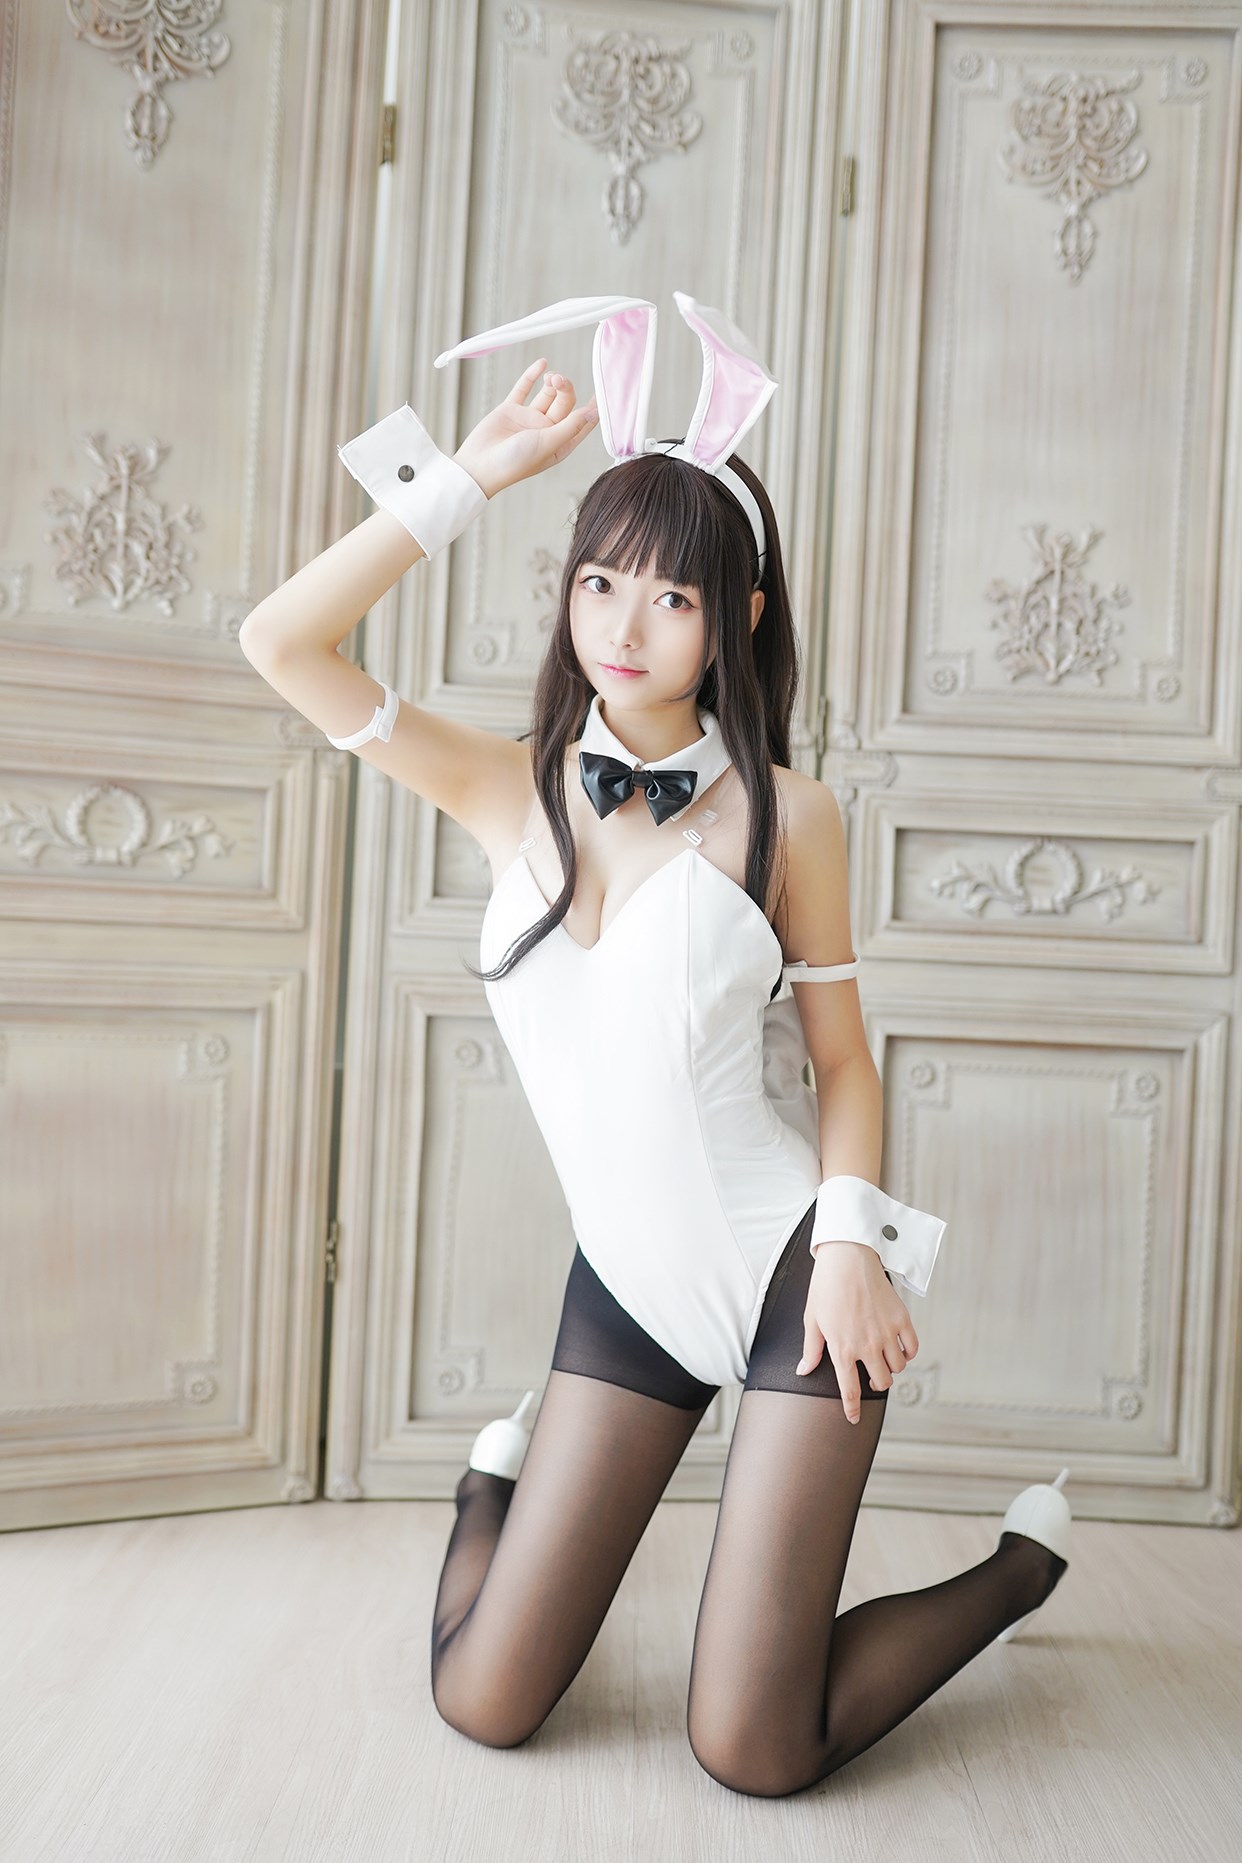 【兔玩映画】兔女郎vol.17-白兔 兔玩映画 第24张